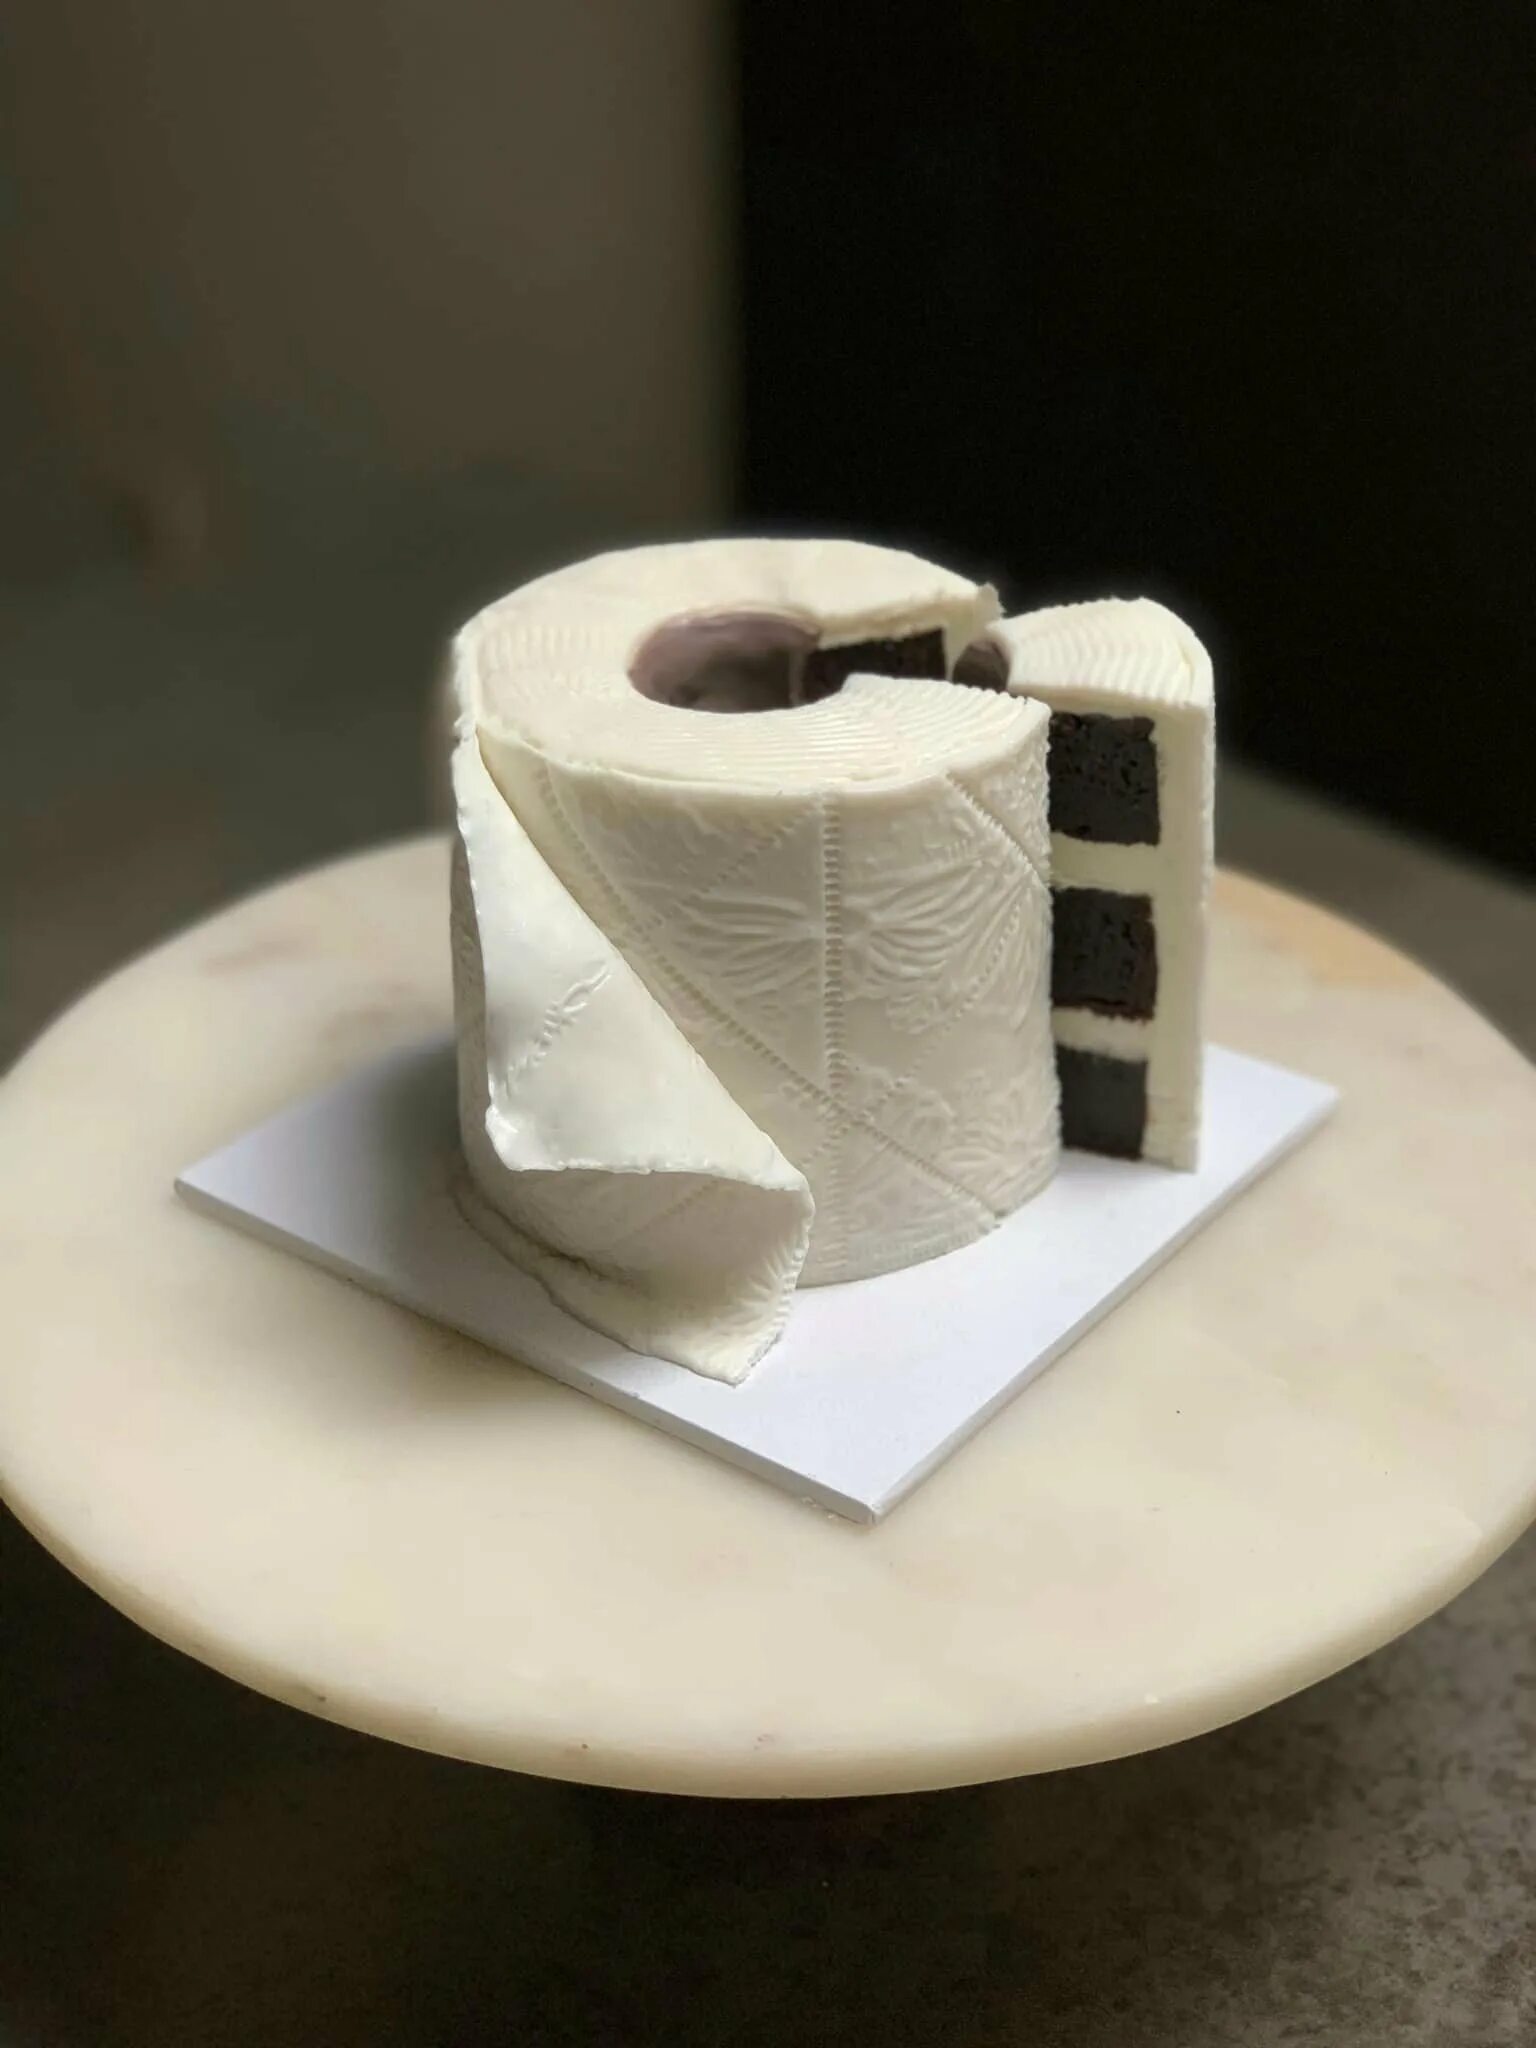 День рождения туалетной бумаги. Торт рулон туалетной бумаги. Торт в виде туалетной бумаги. Торт в виде рулона туалетной бумаги. Торт в форме туалетной бумаги.